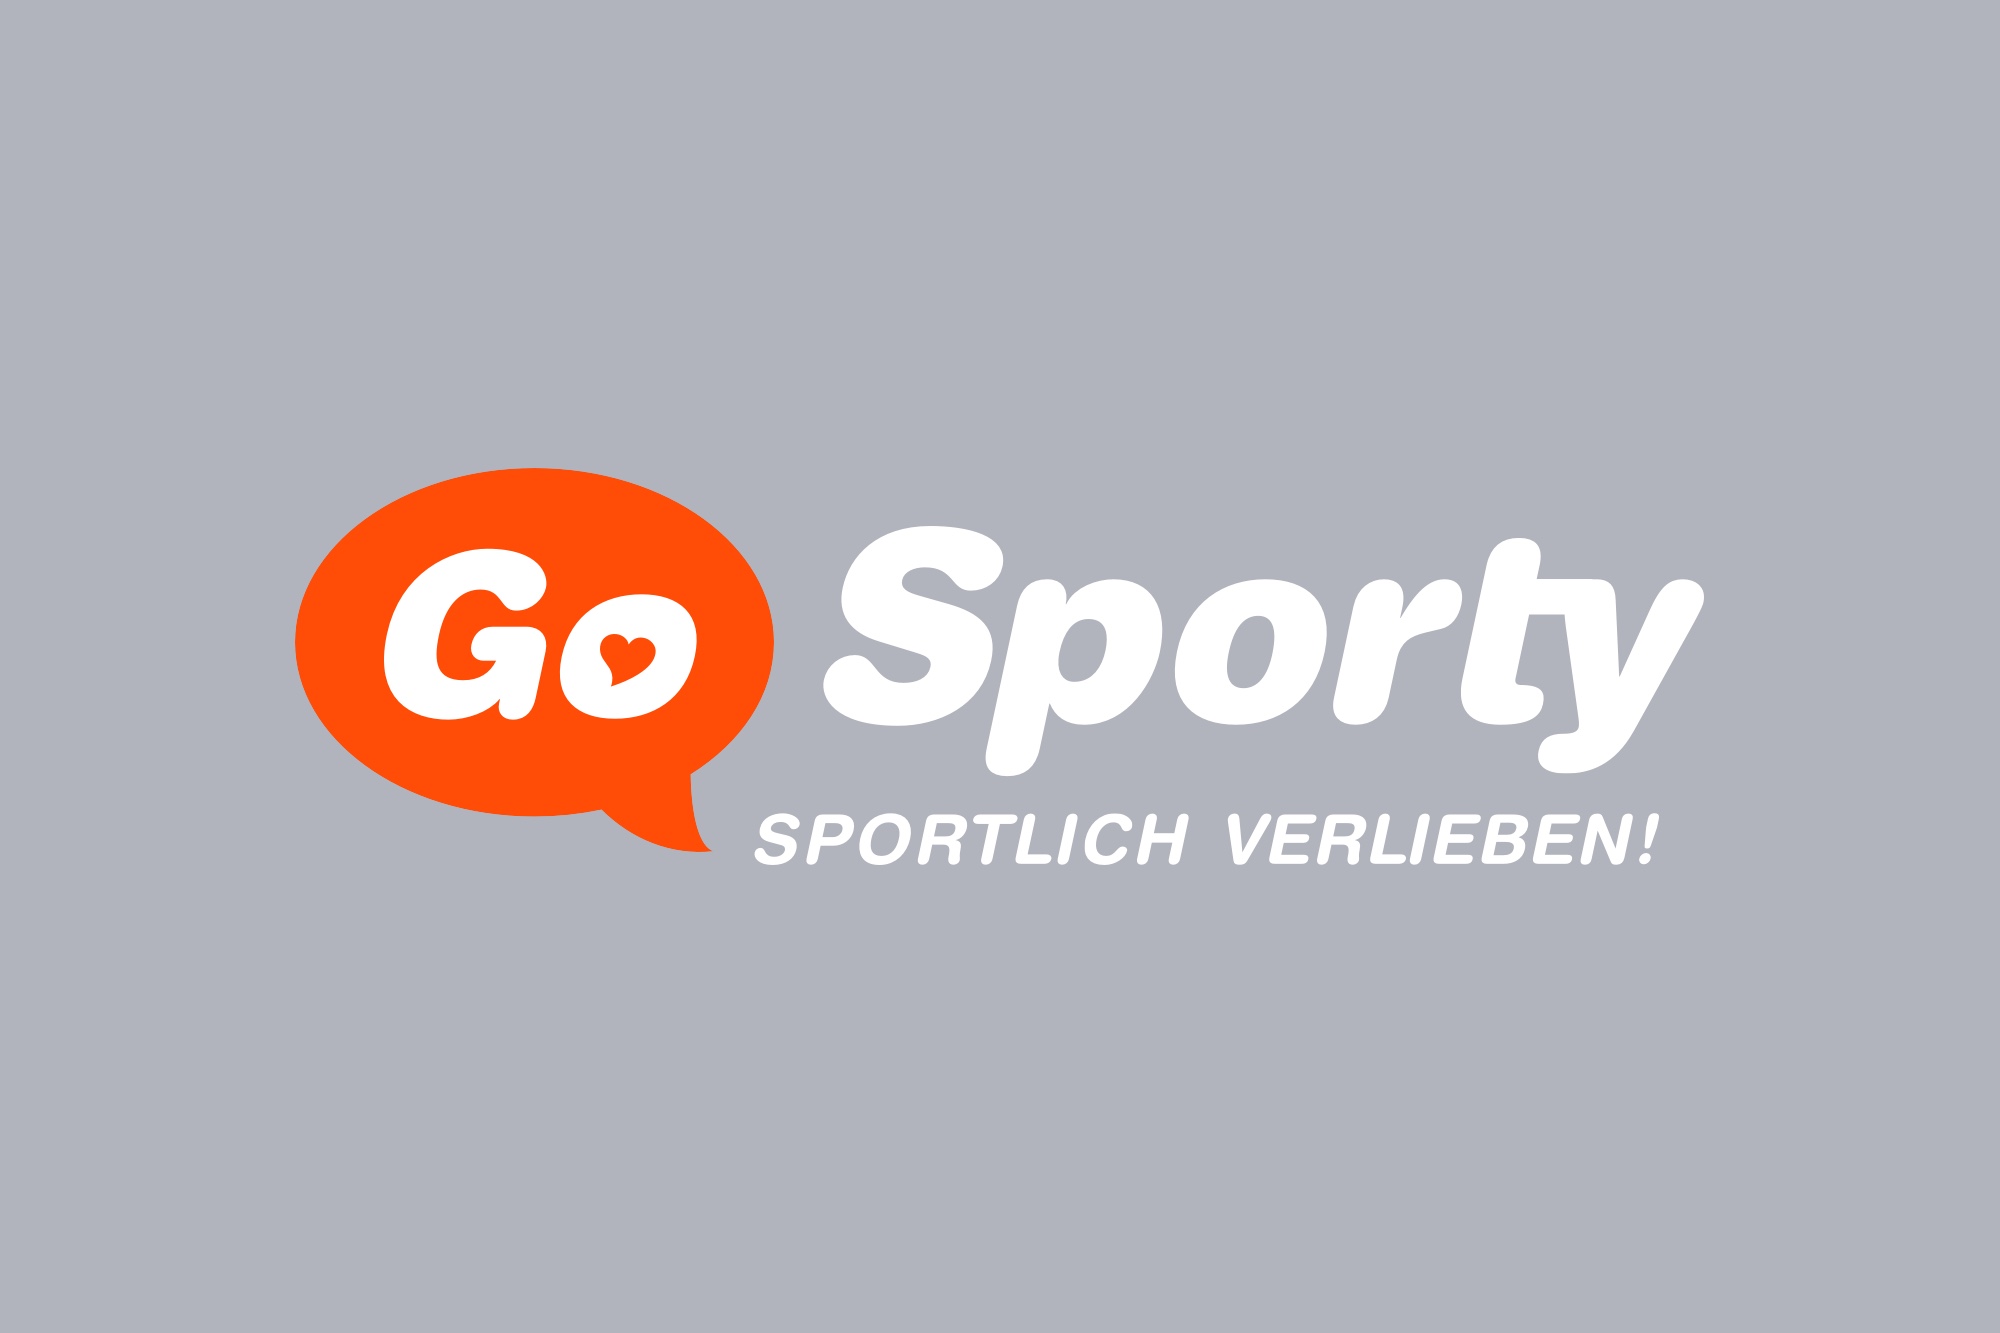 Go Sporty